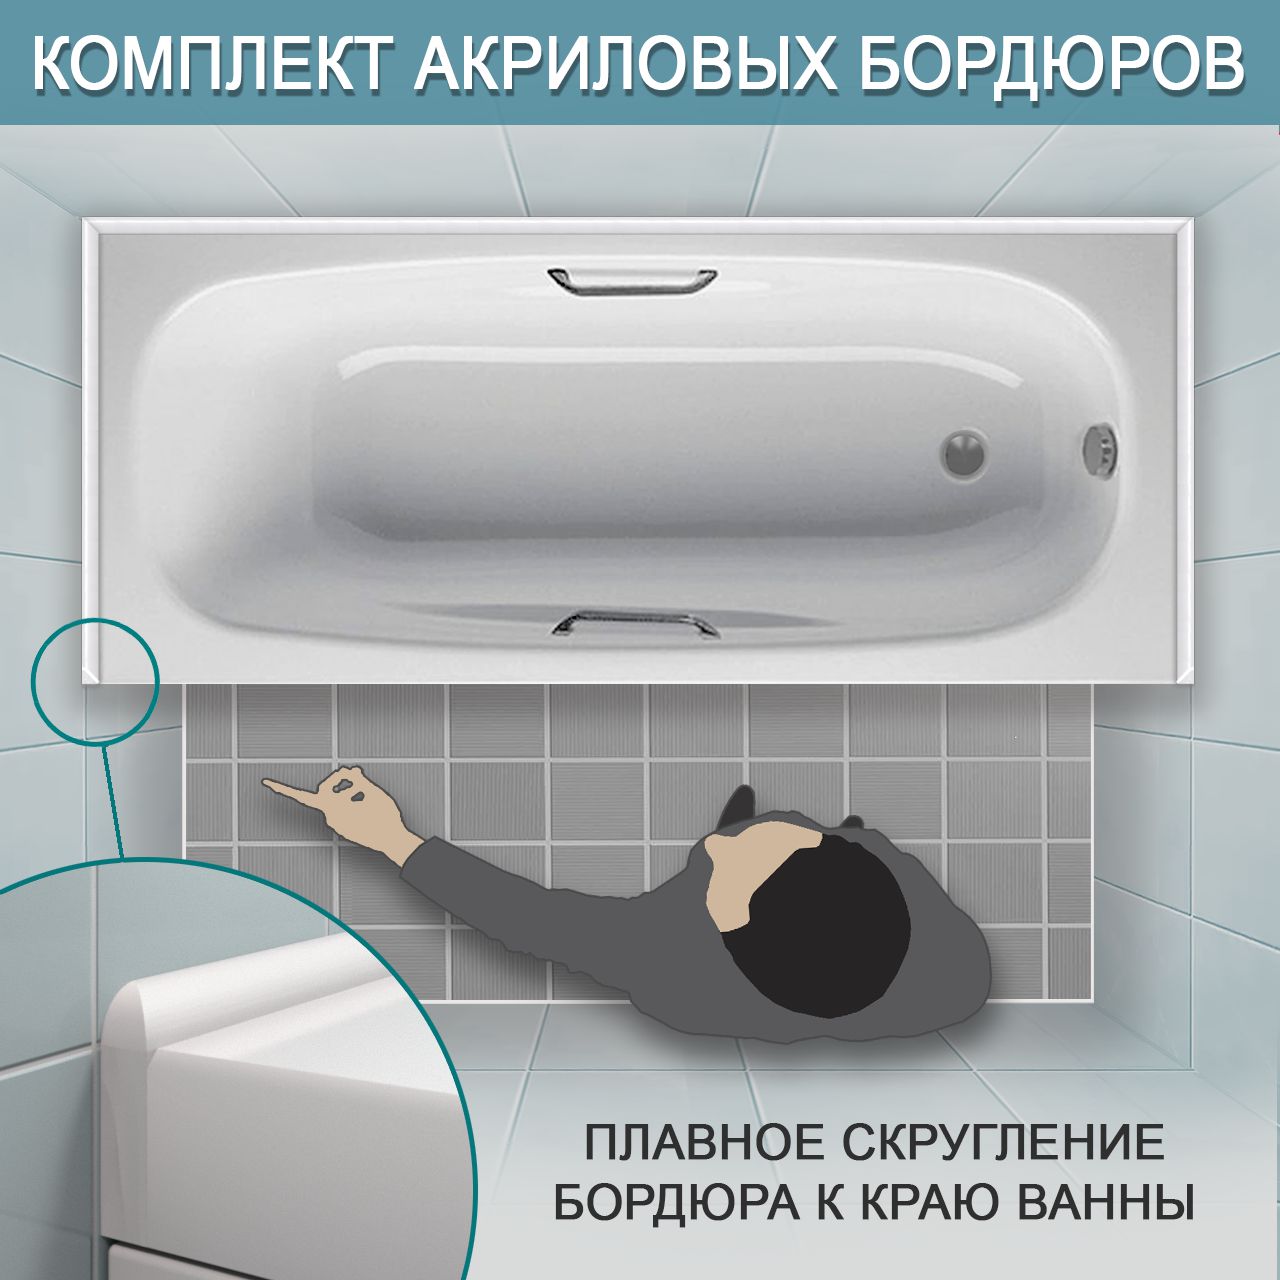 Комплект акриловых бордюров для ванной (3 шт) ПШ12 интернет-магазин BNV